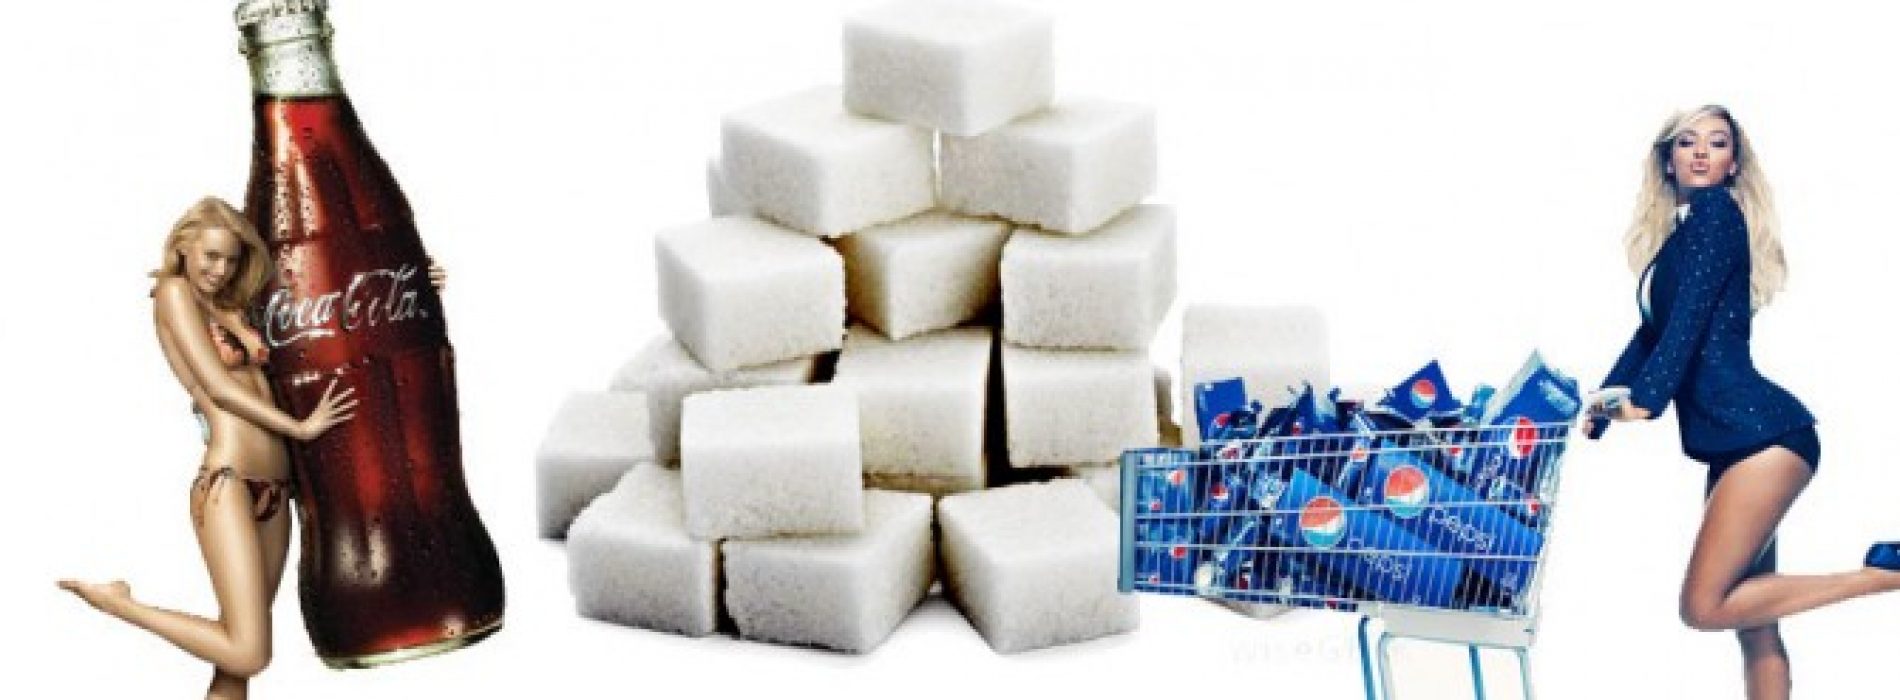 Hoe de machtige cola-lobby ons verslaafd houdt aan suiker